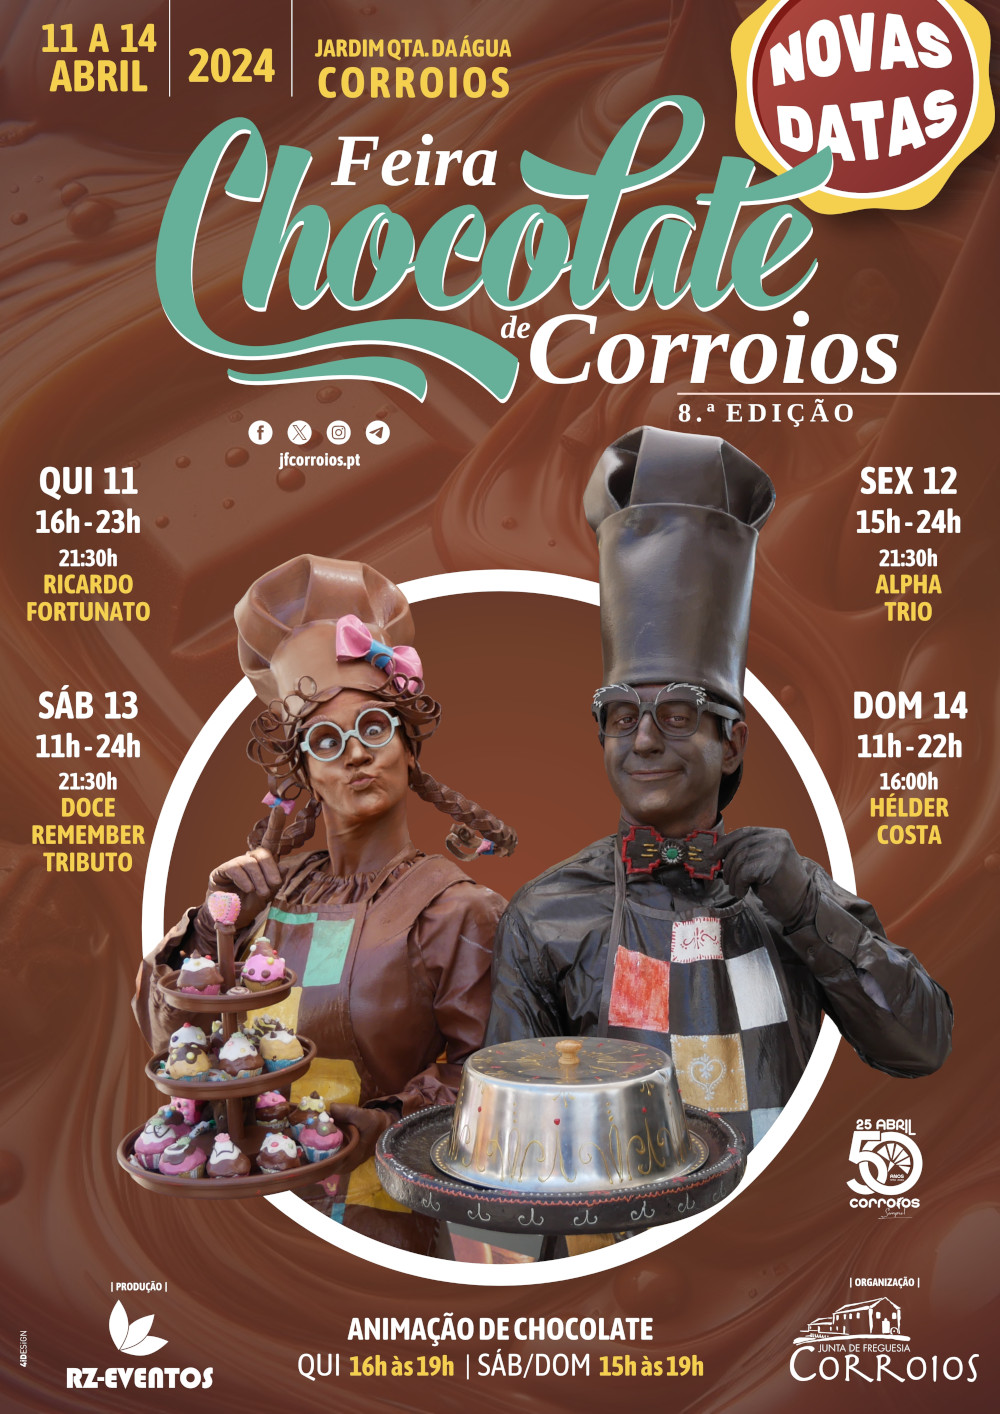 VIII Feira do Chocolate de Corroios - Novas datas